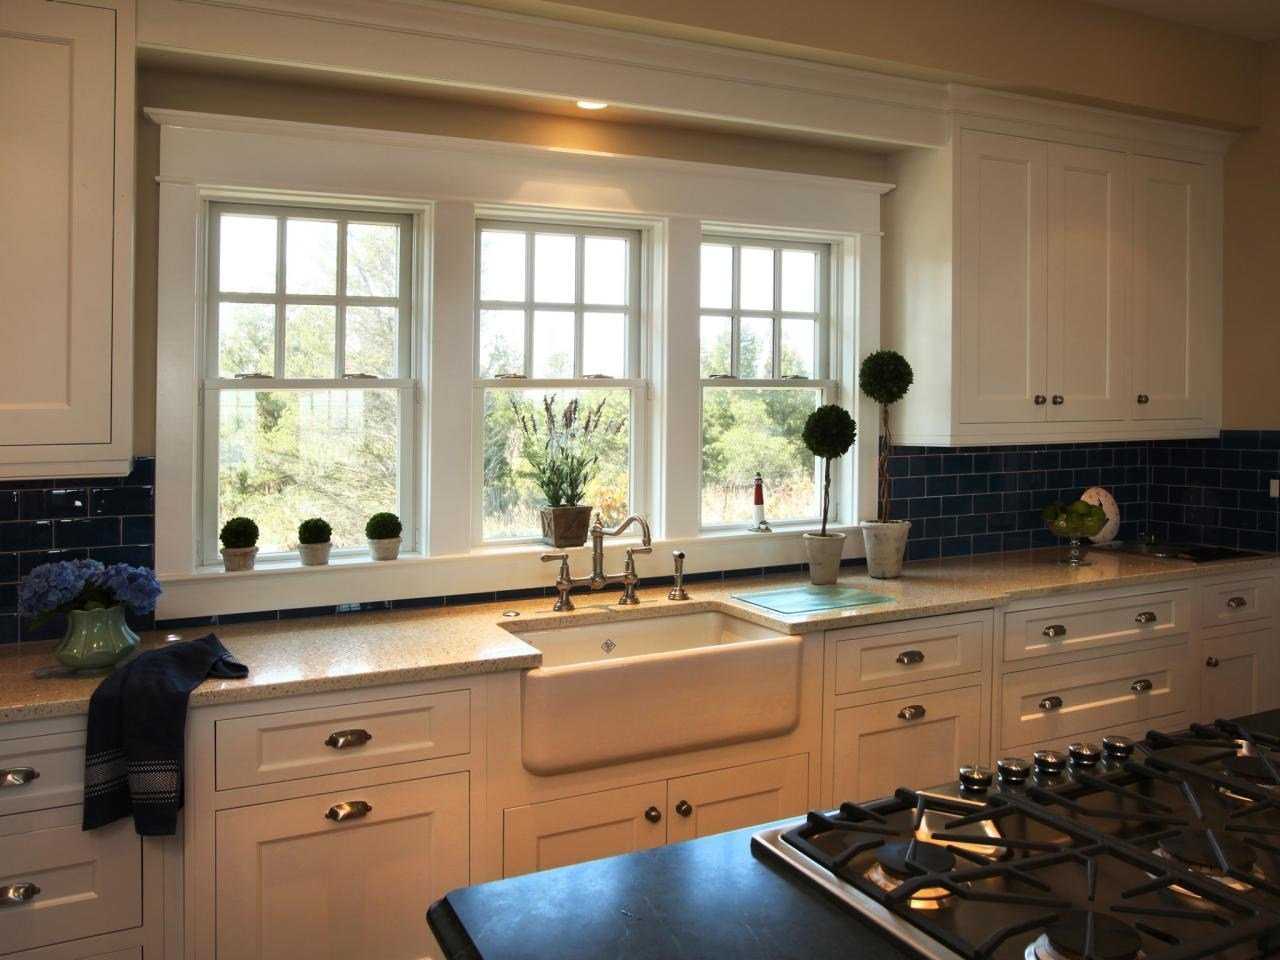 Кухня с окном: фото примеры оформление окна на кухне